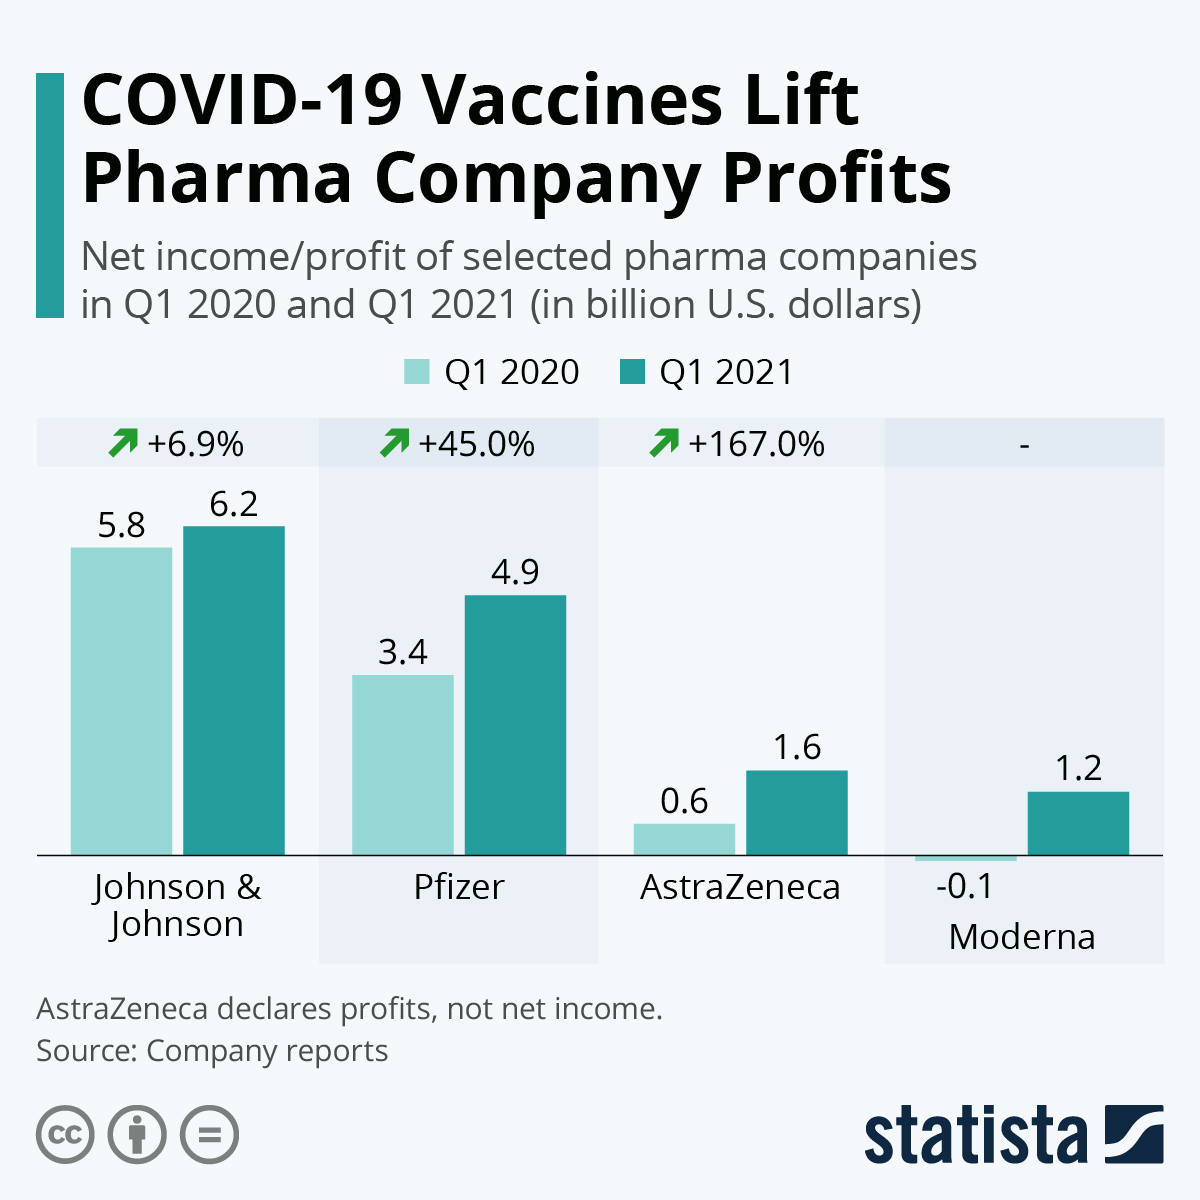 COVID-19 Vaccines Lift Pharma Company Profits